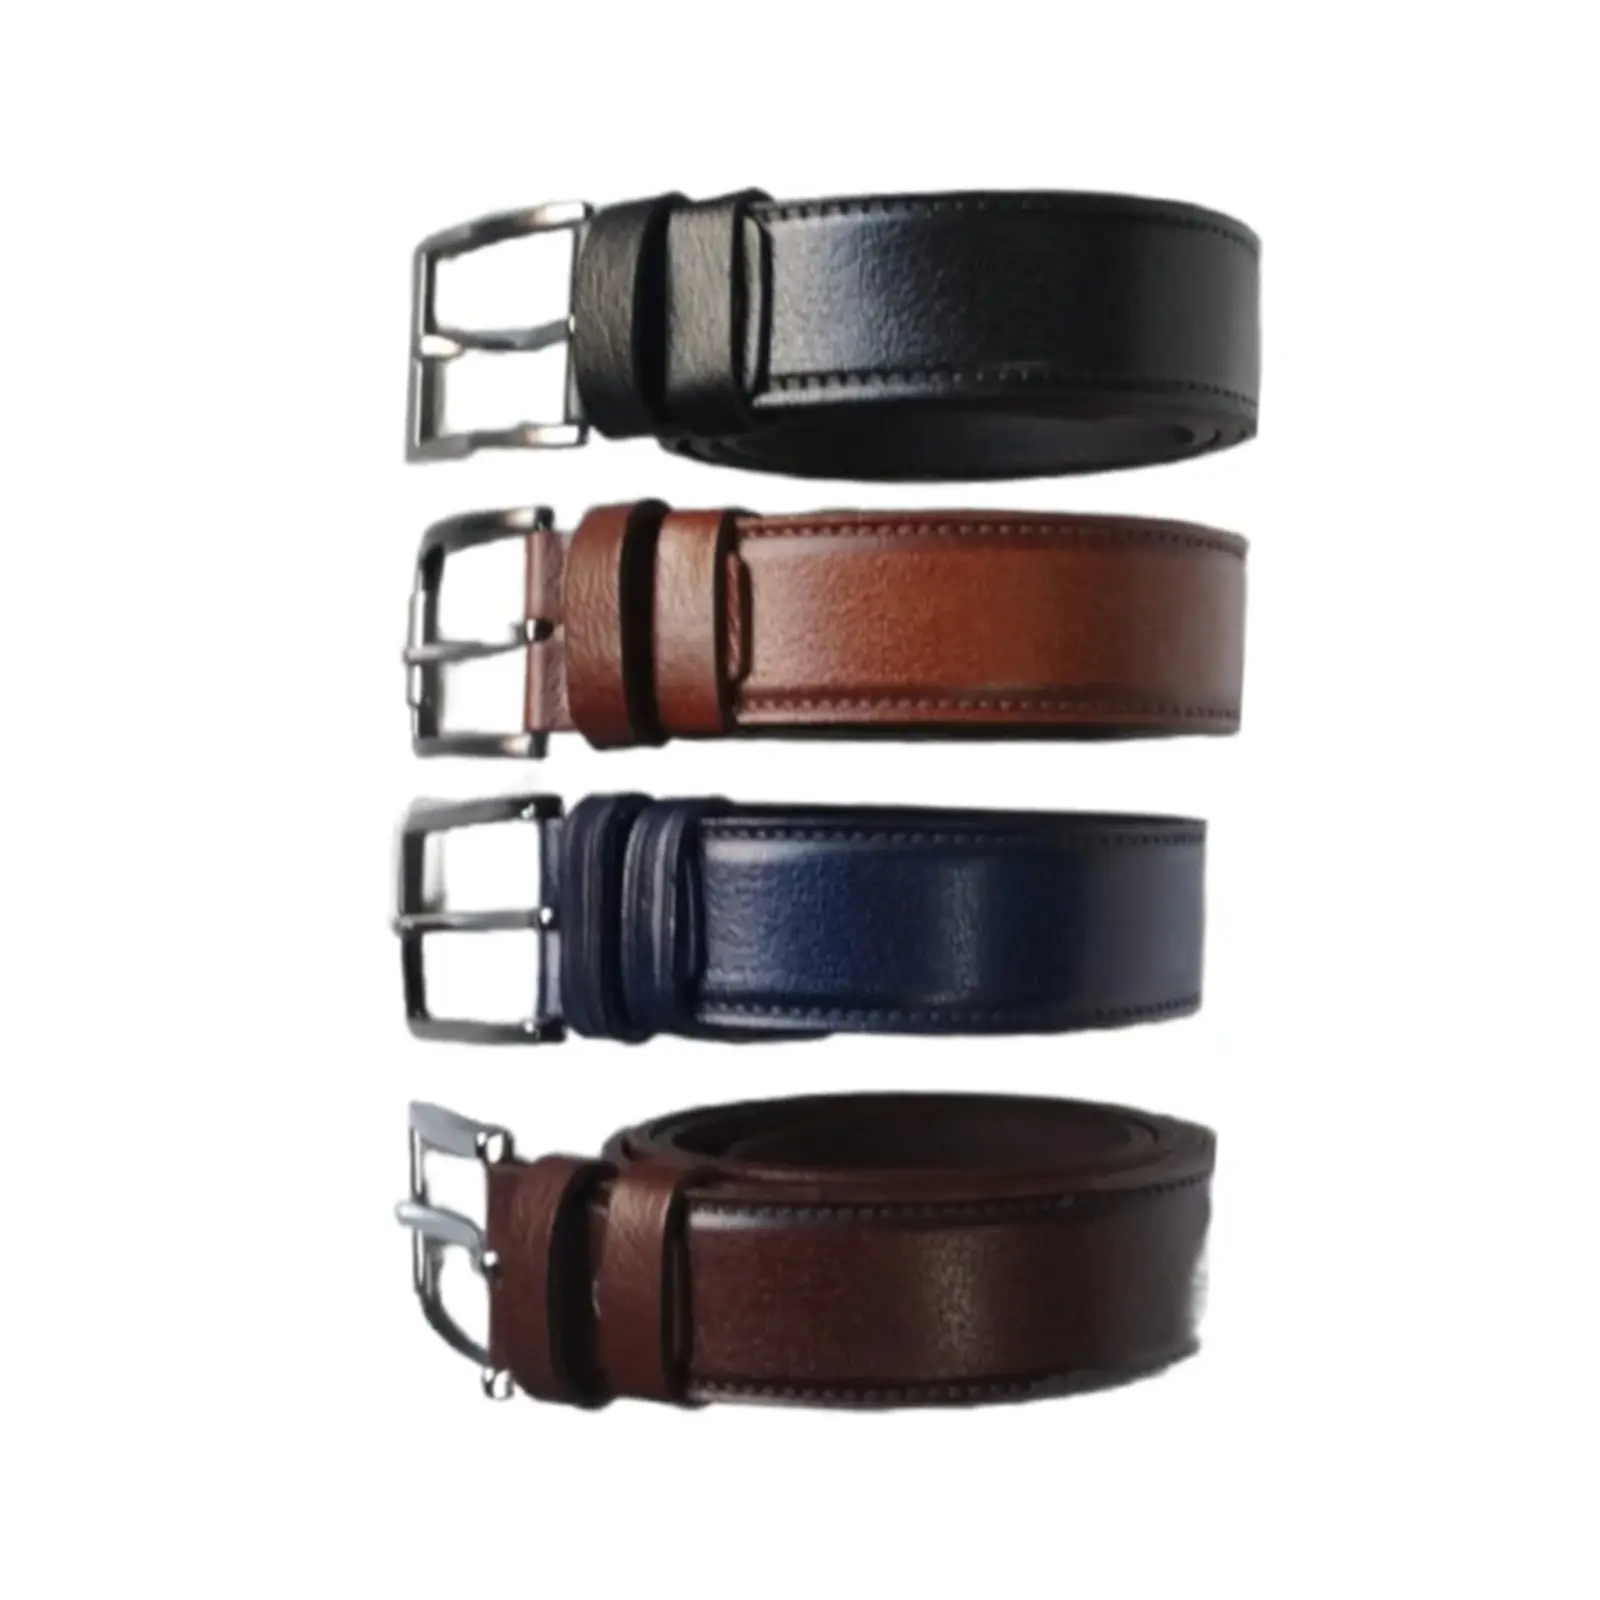 Buy 4 Pc Set Good Belts For Men Genuine Leather - LeatherBeltsOnline.com